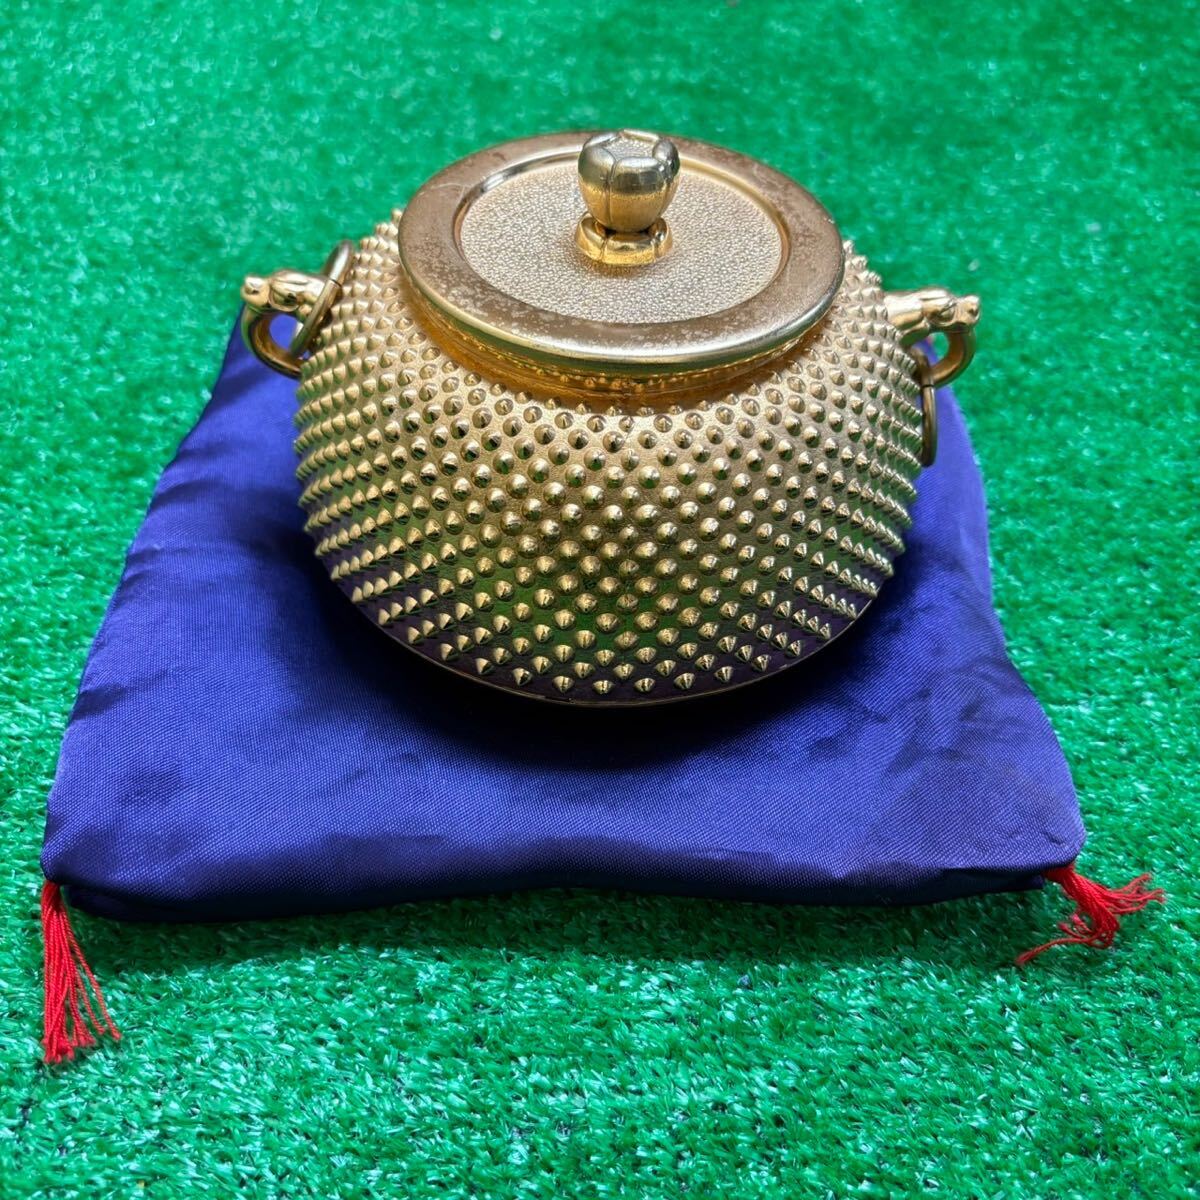  золотой. чай котел изобразительное искусство изделие прикладного искусства позолоченный чайная посуда удача в деньгах выше 